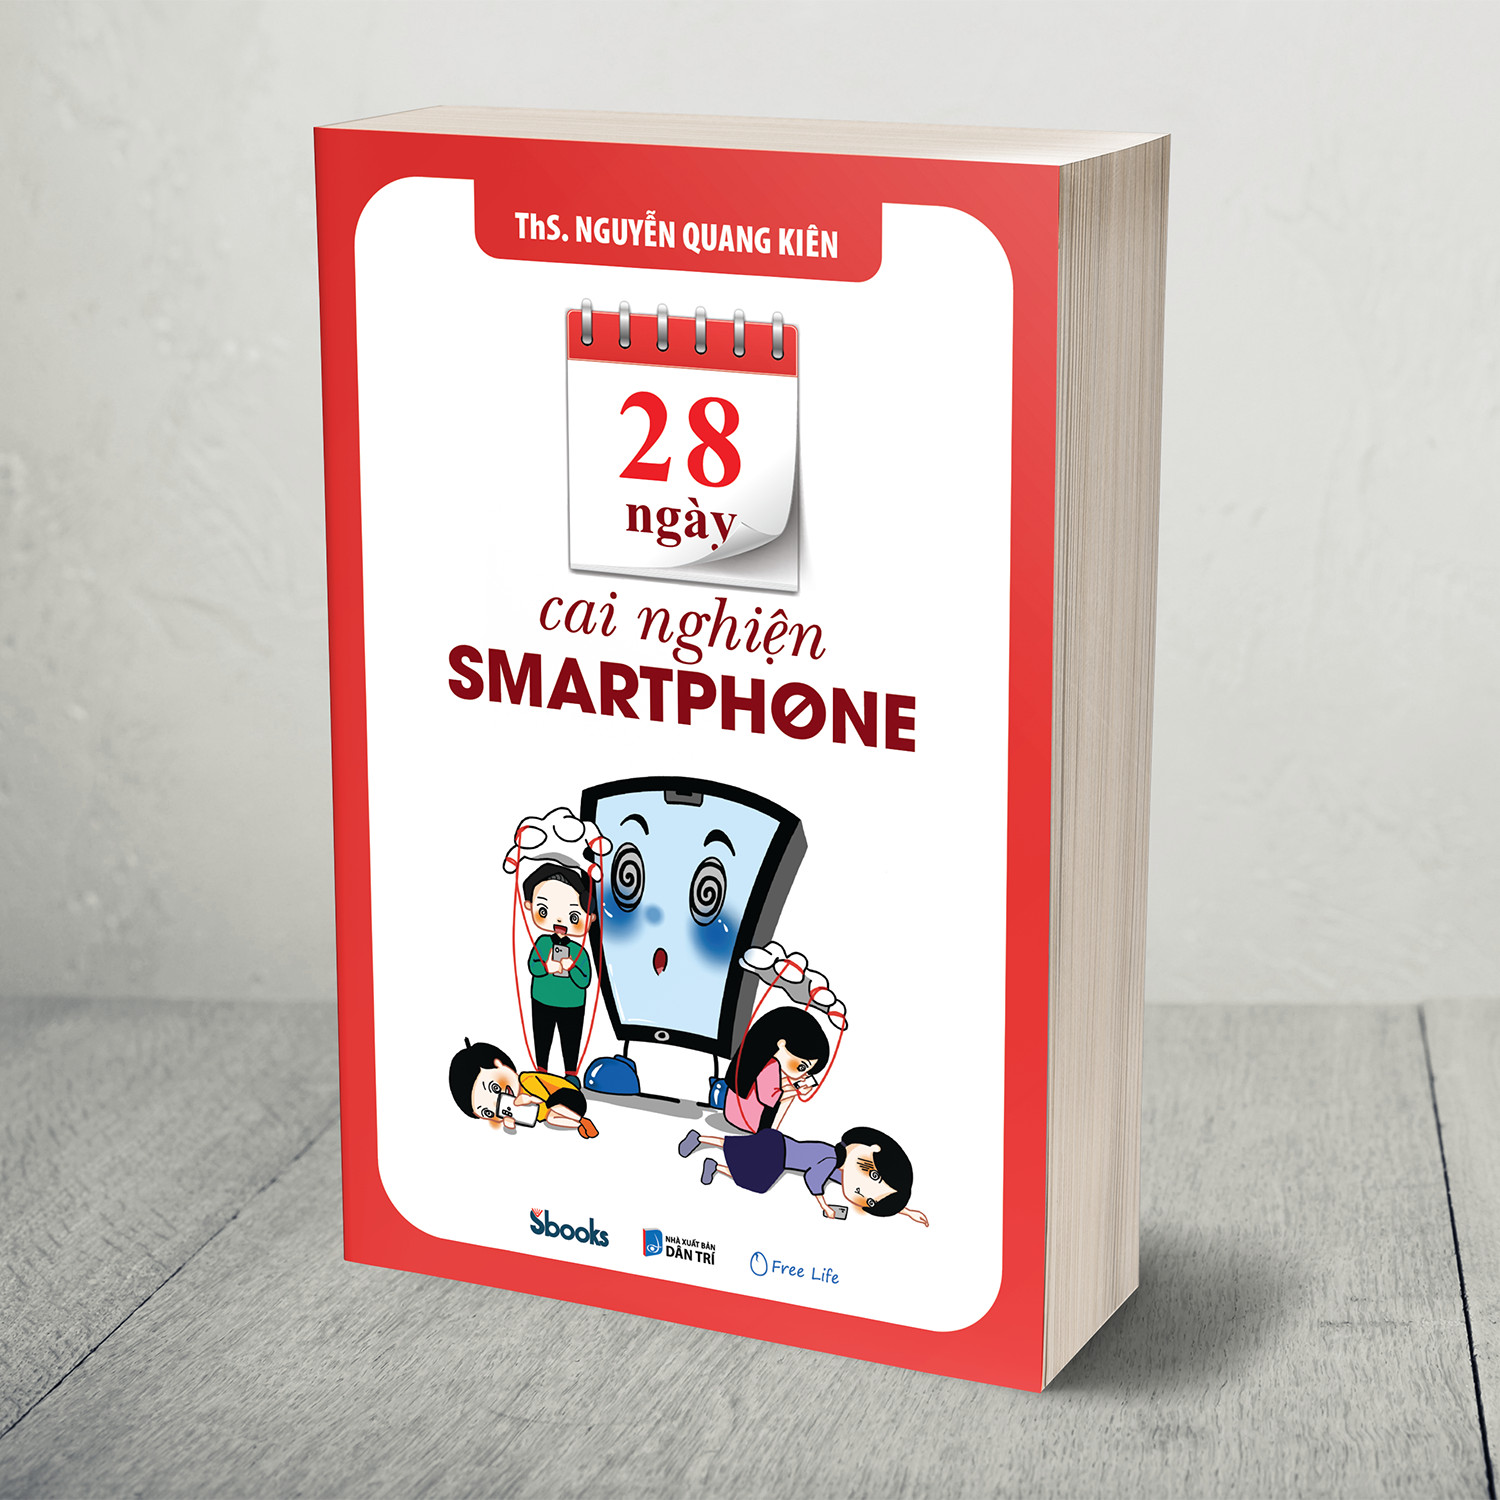 28 NGÀY CAI NGHIỆN SMARTPHONE (ThS. Nguyễn Quang Kiên)